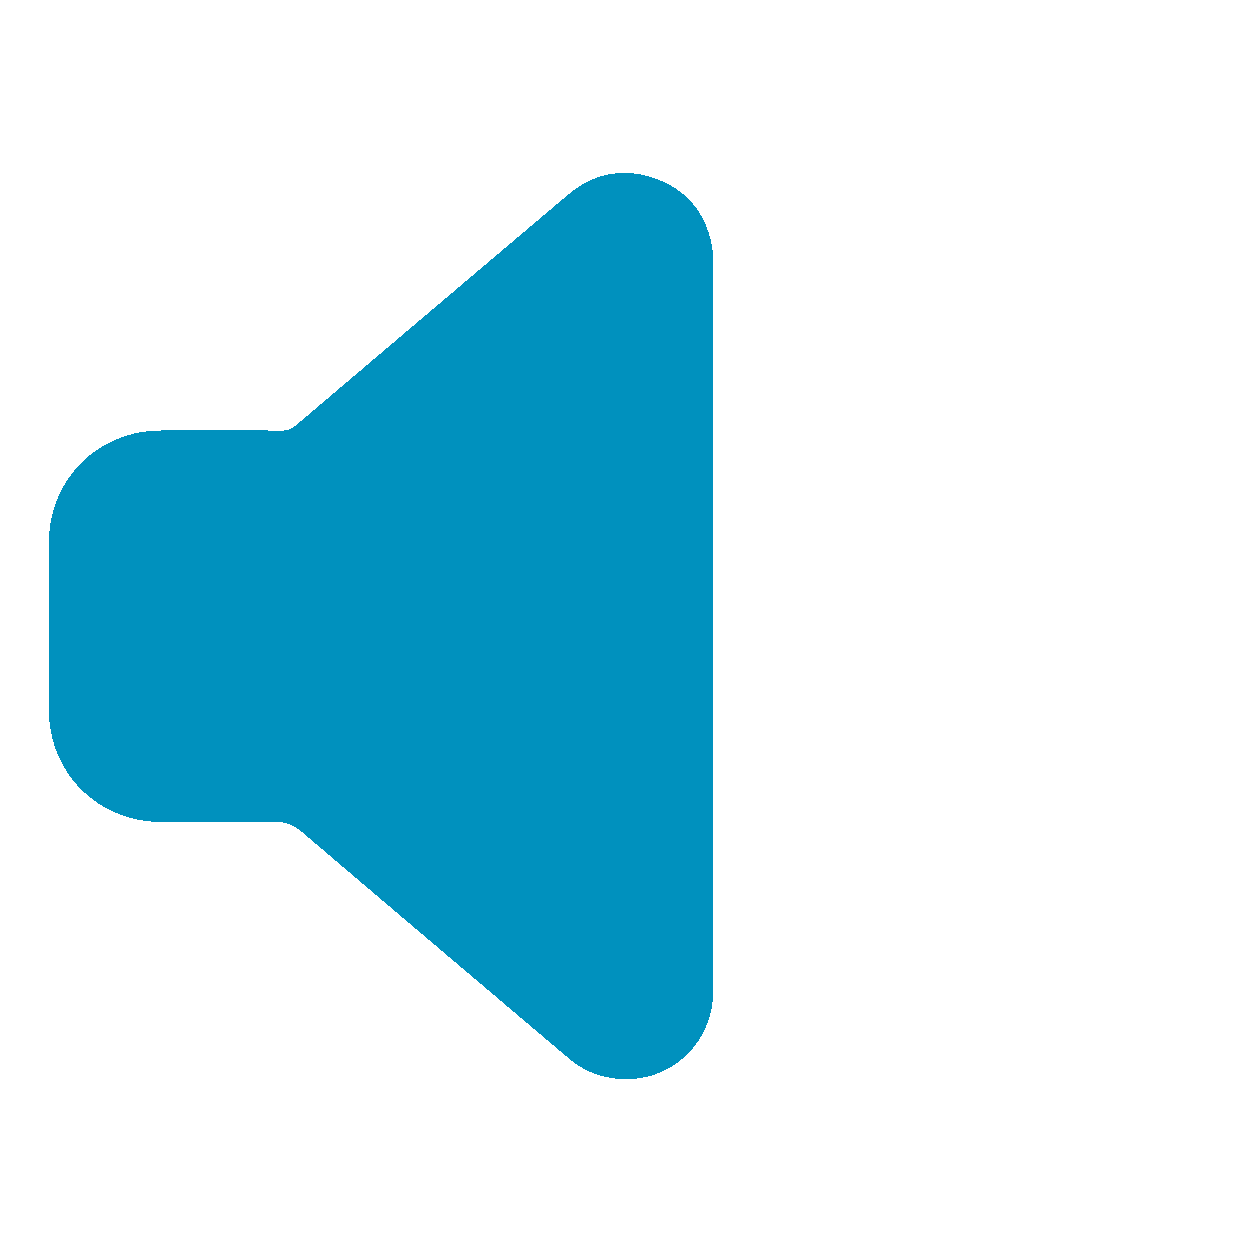 Notfall-Kommunikationsnetz mit Steuerung über Tastentöne